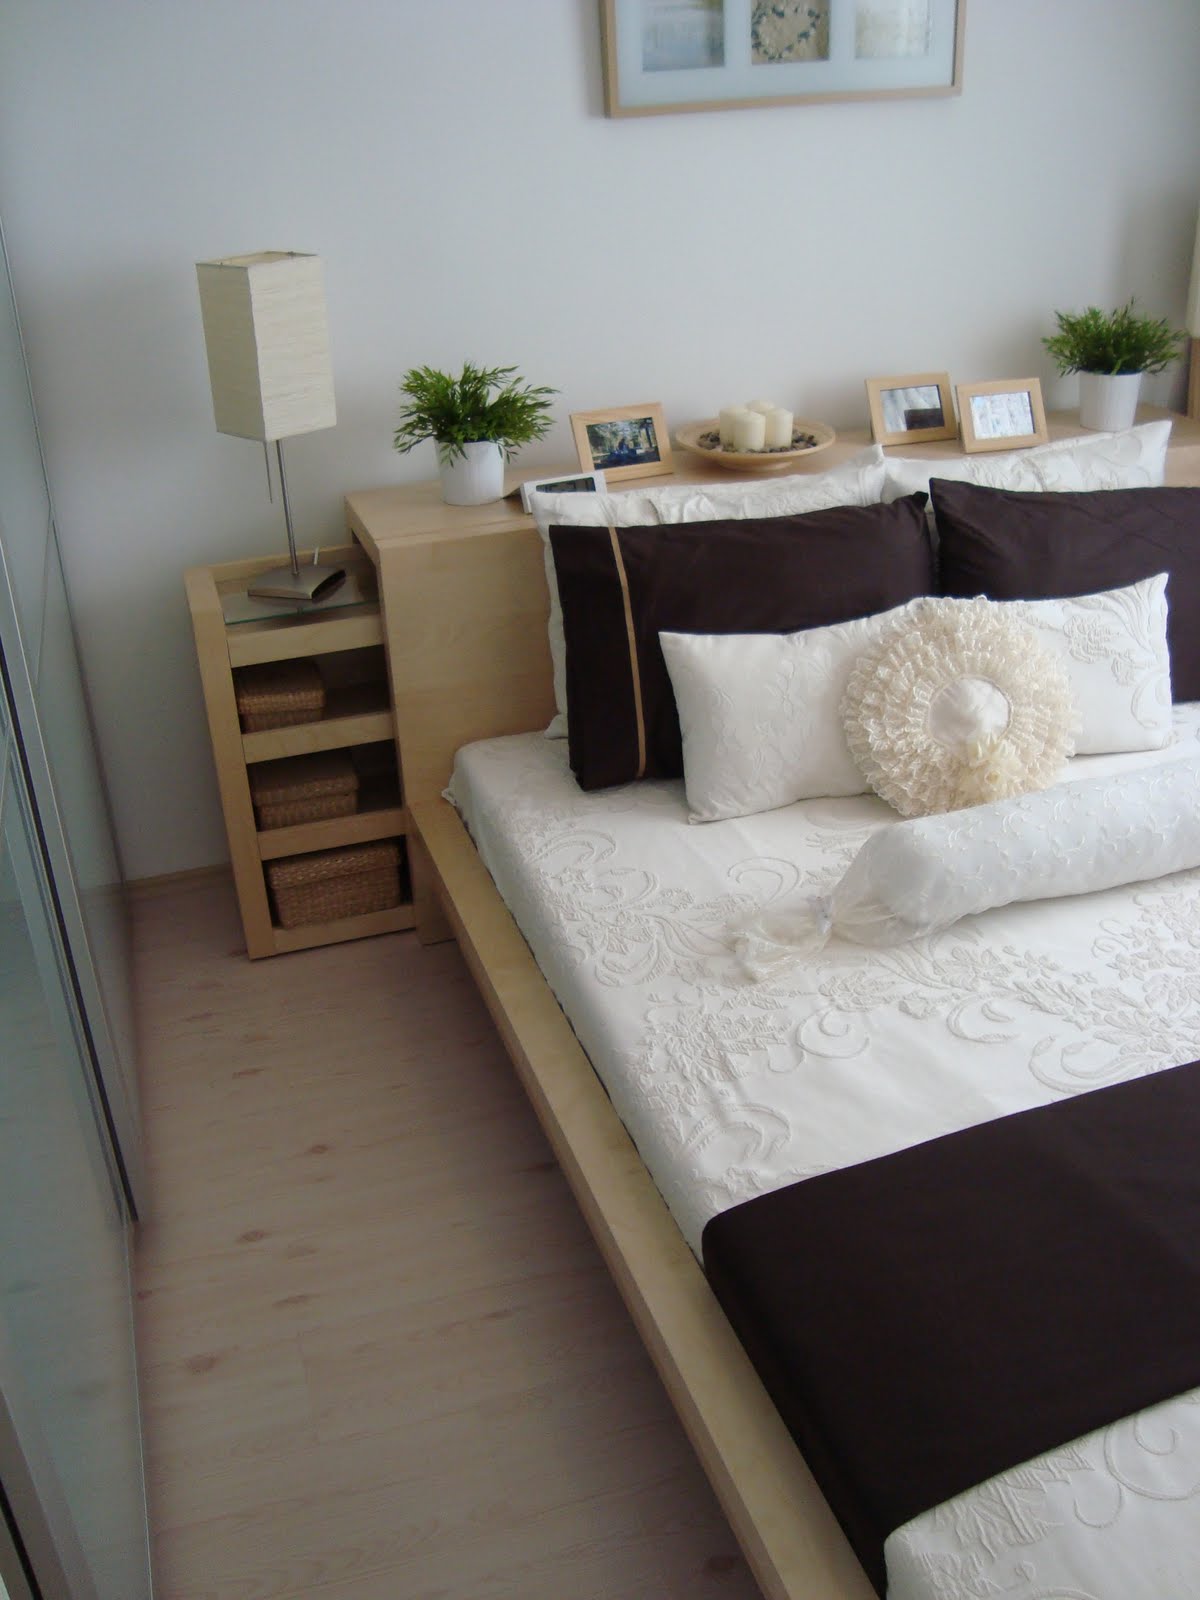 Yatak Odası Dekorasyonu (Bedroom Decoration)